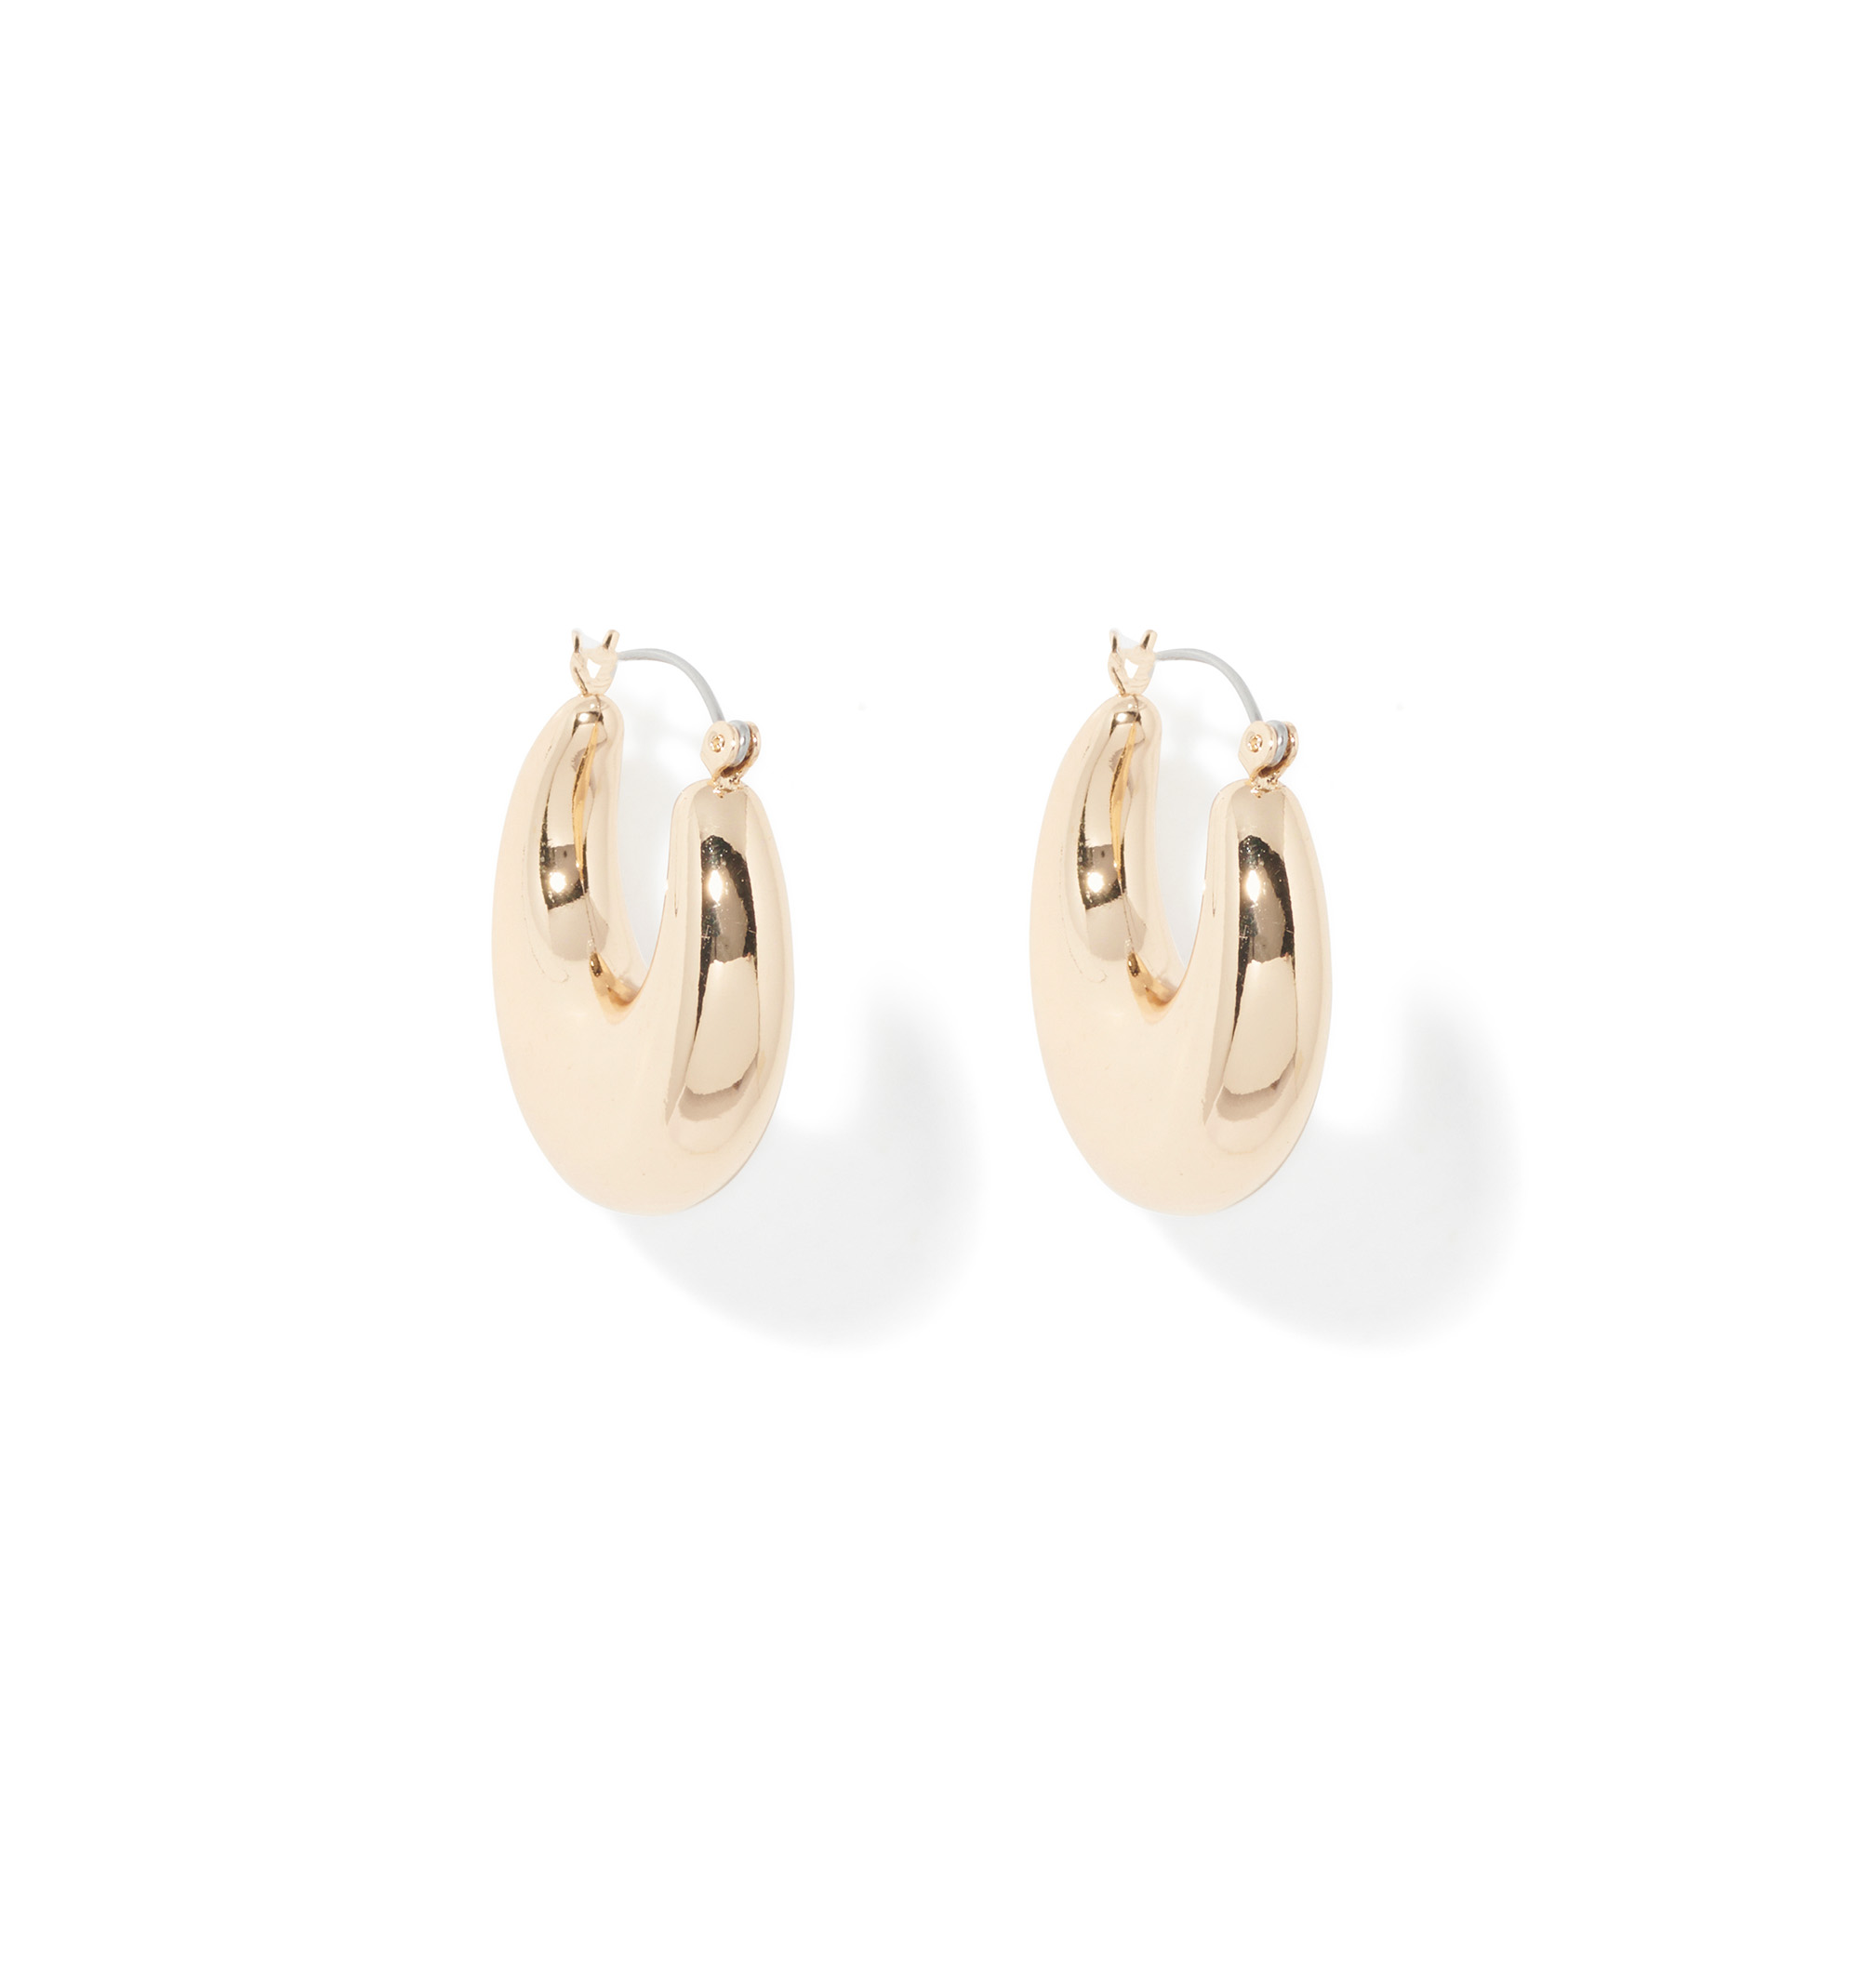 NB Large hoop earrings 14K gold-plated 925 sterling India | Ubuy